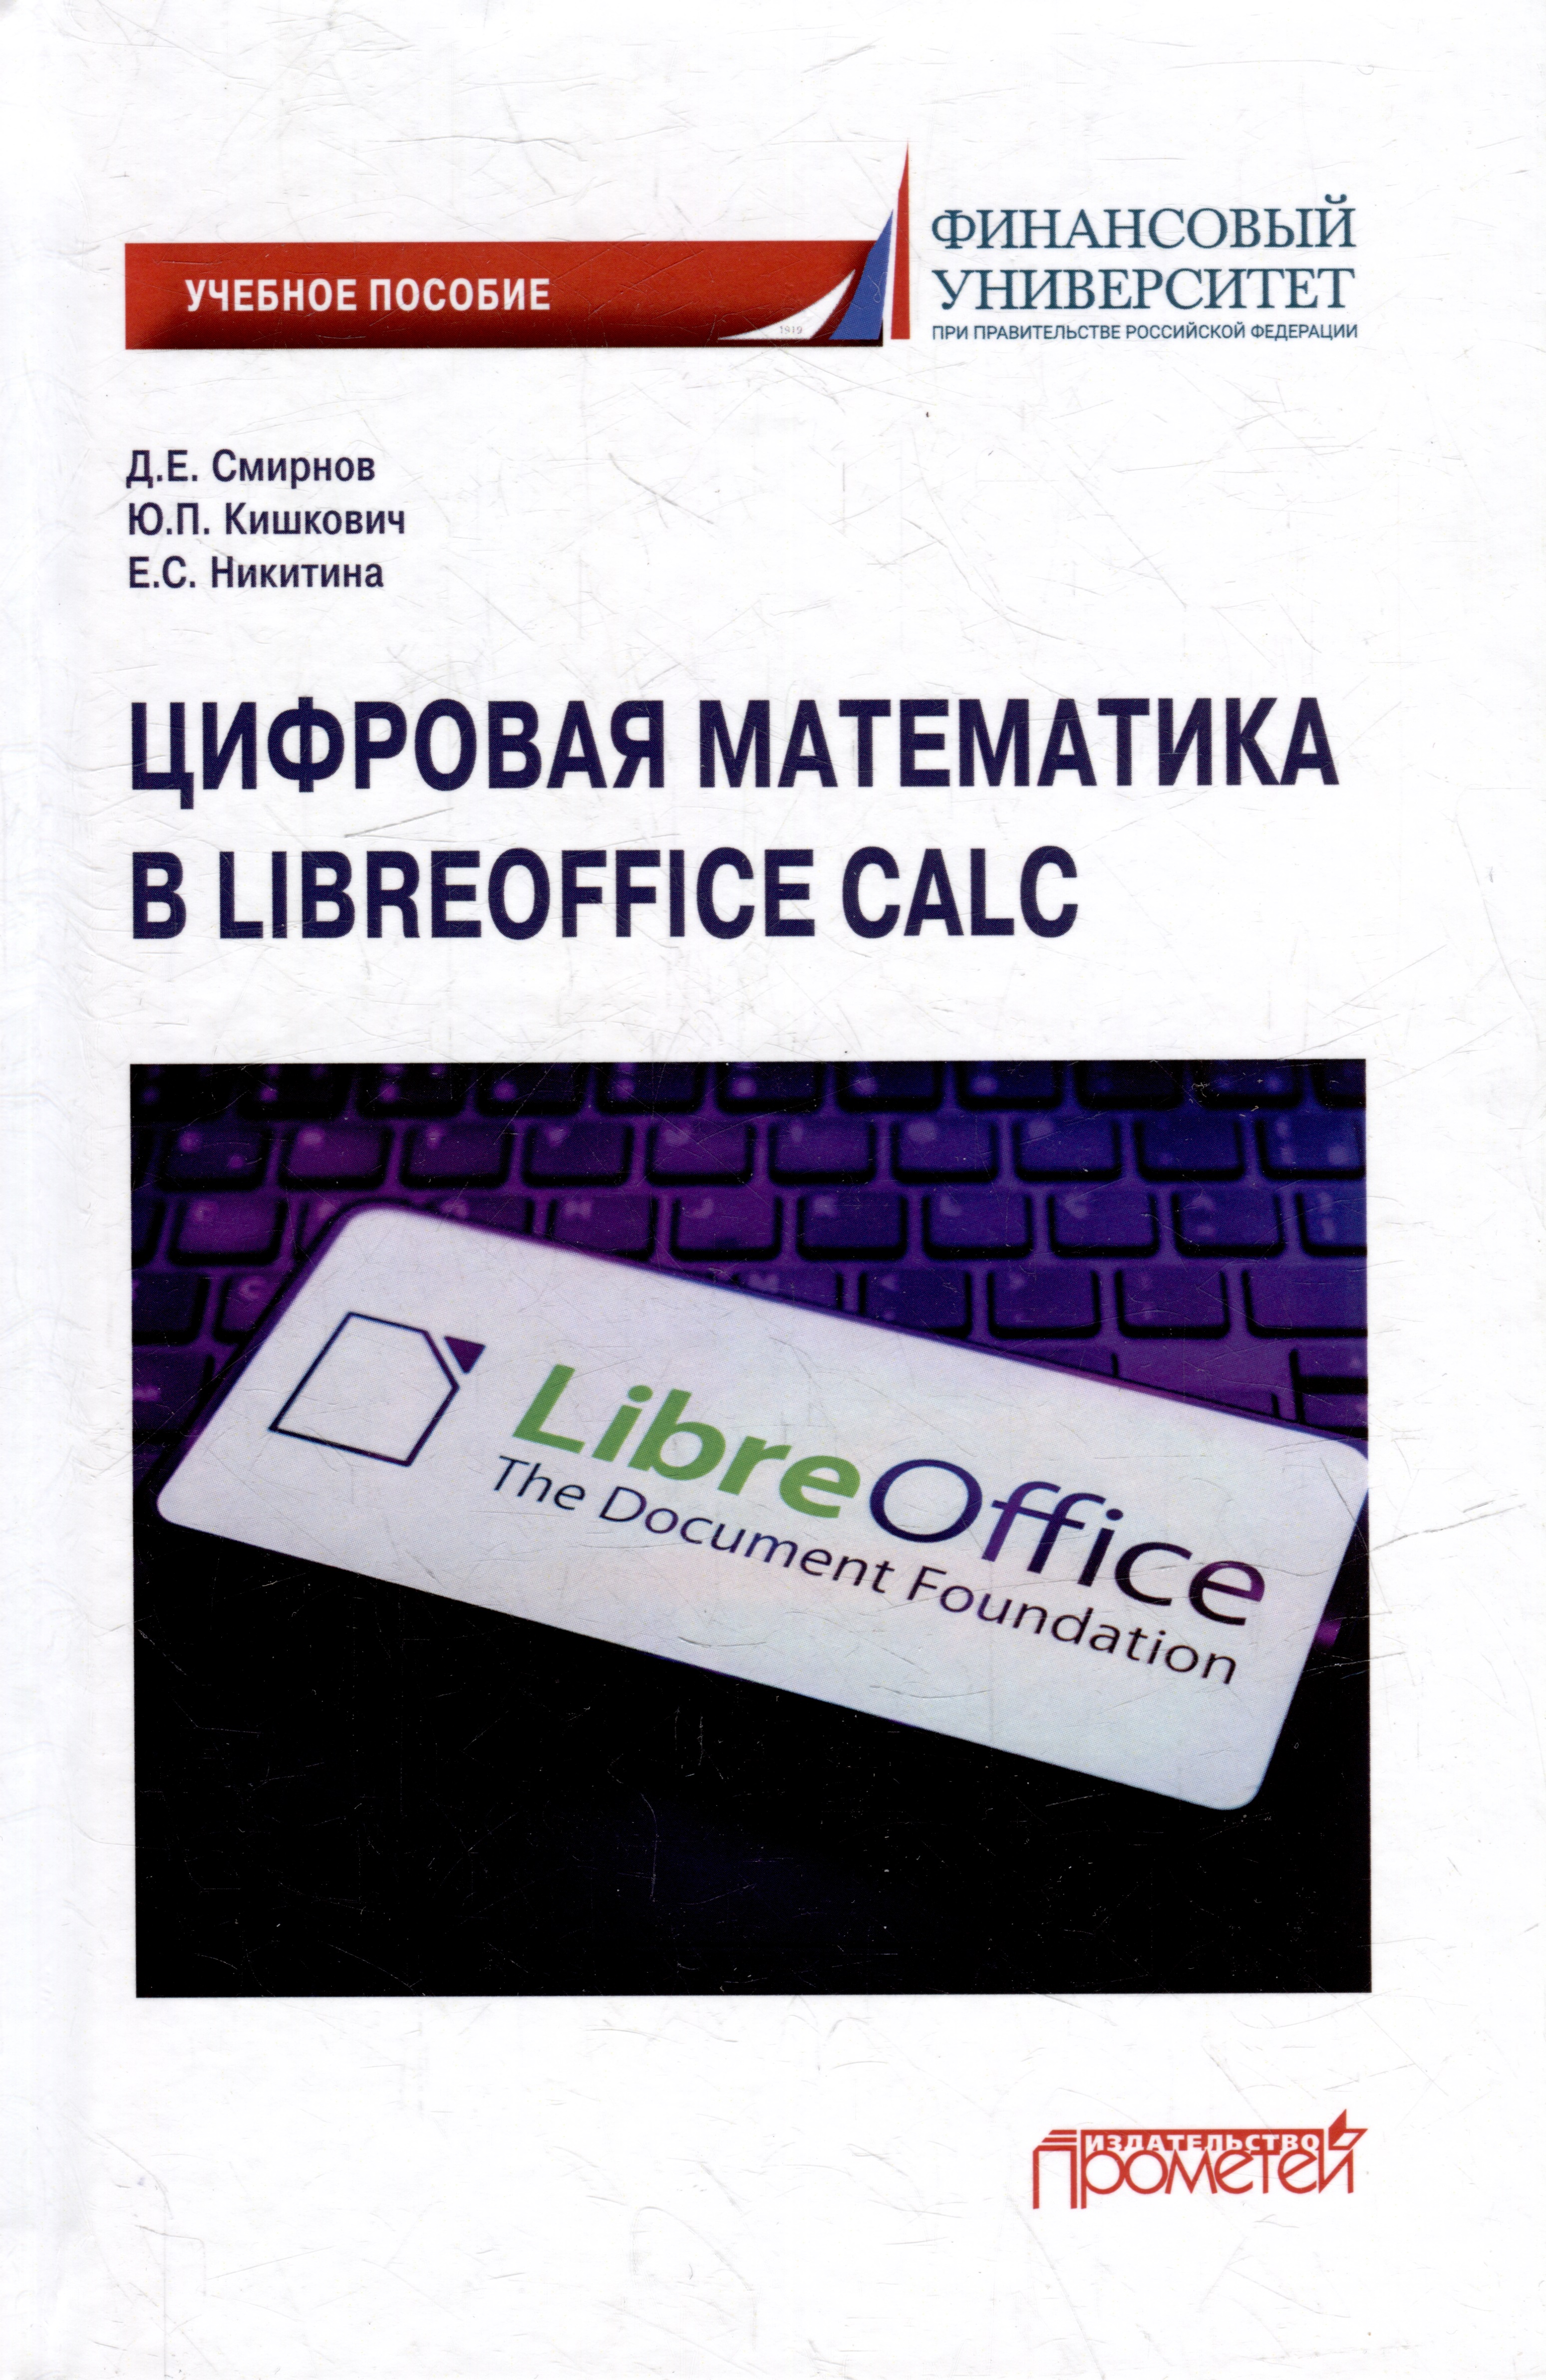 Цифровая математика в LibreOffice Calc: Учебное пособие демина т шевякова о математический анализ для экономистов практикум учебное пособие